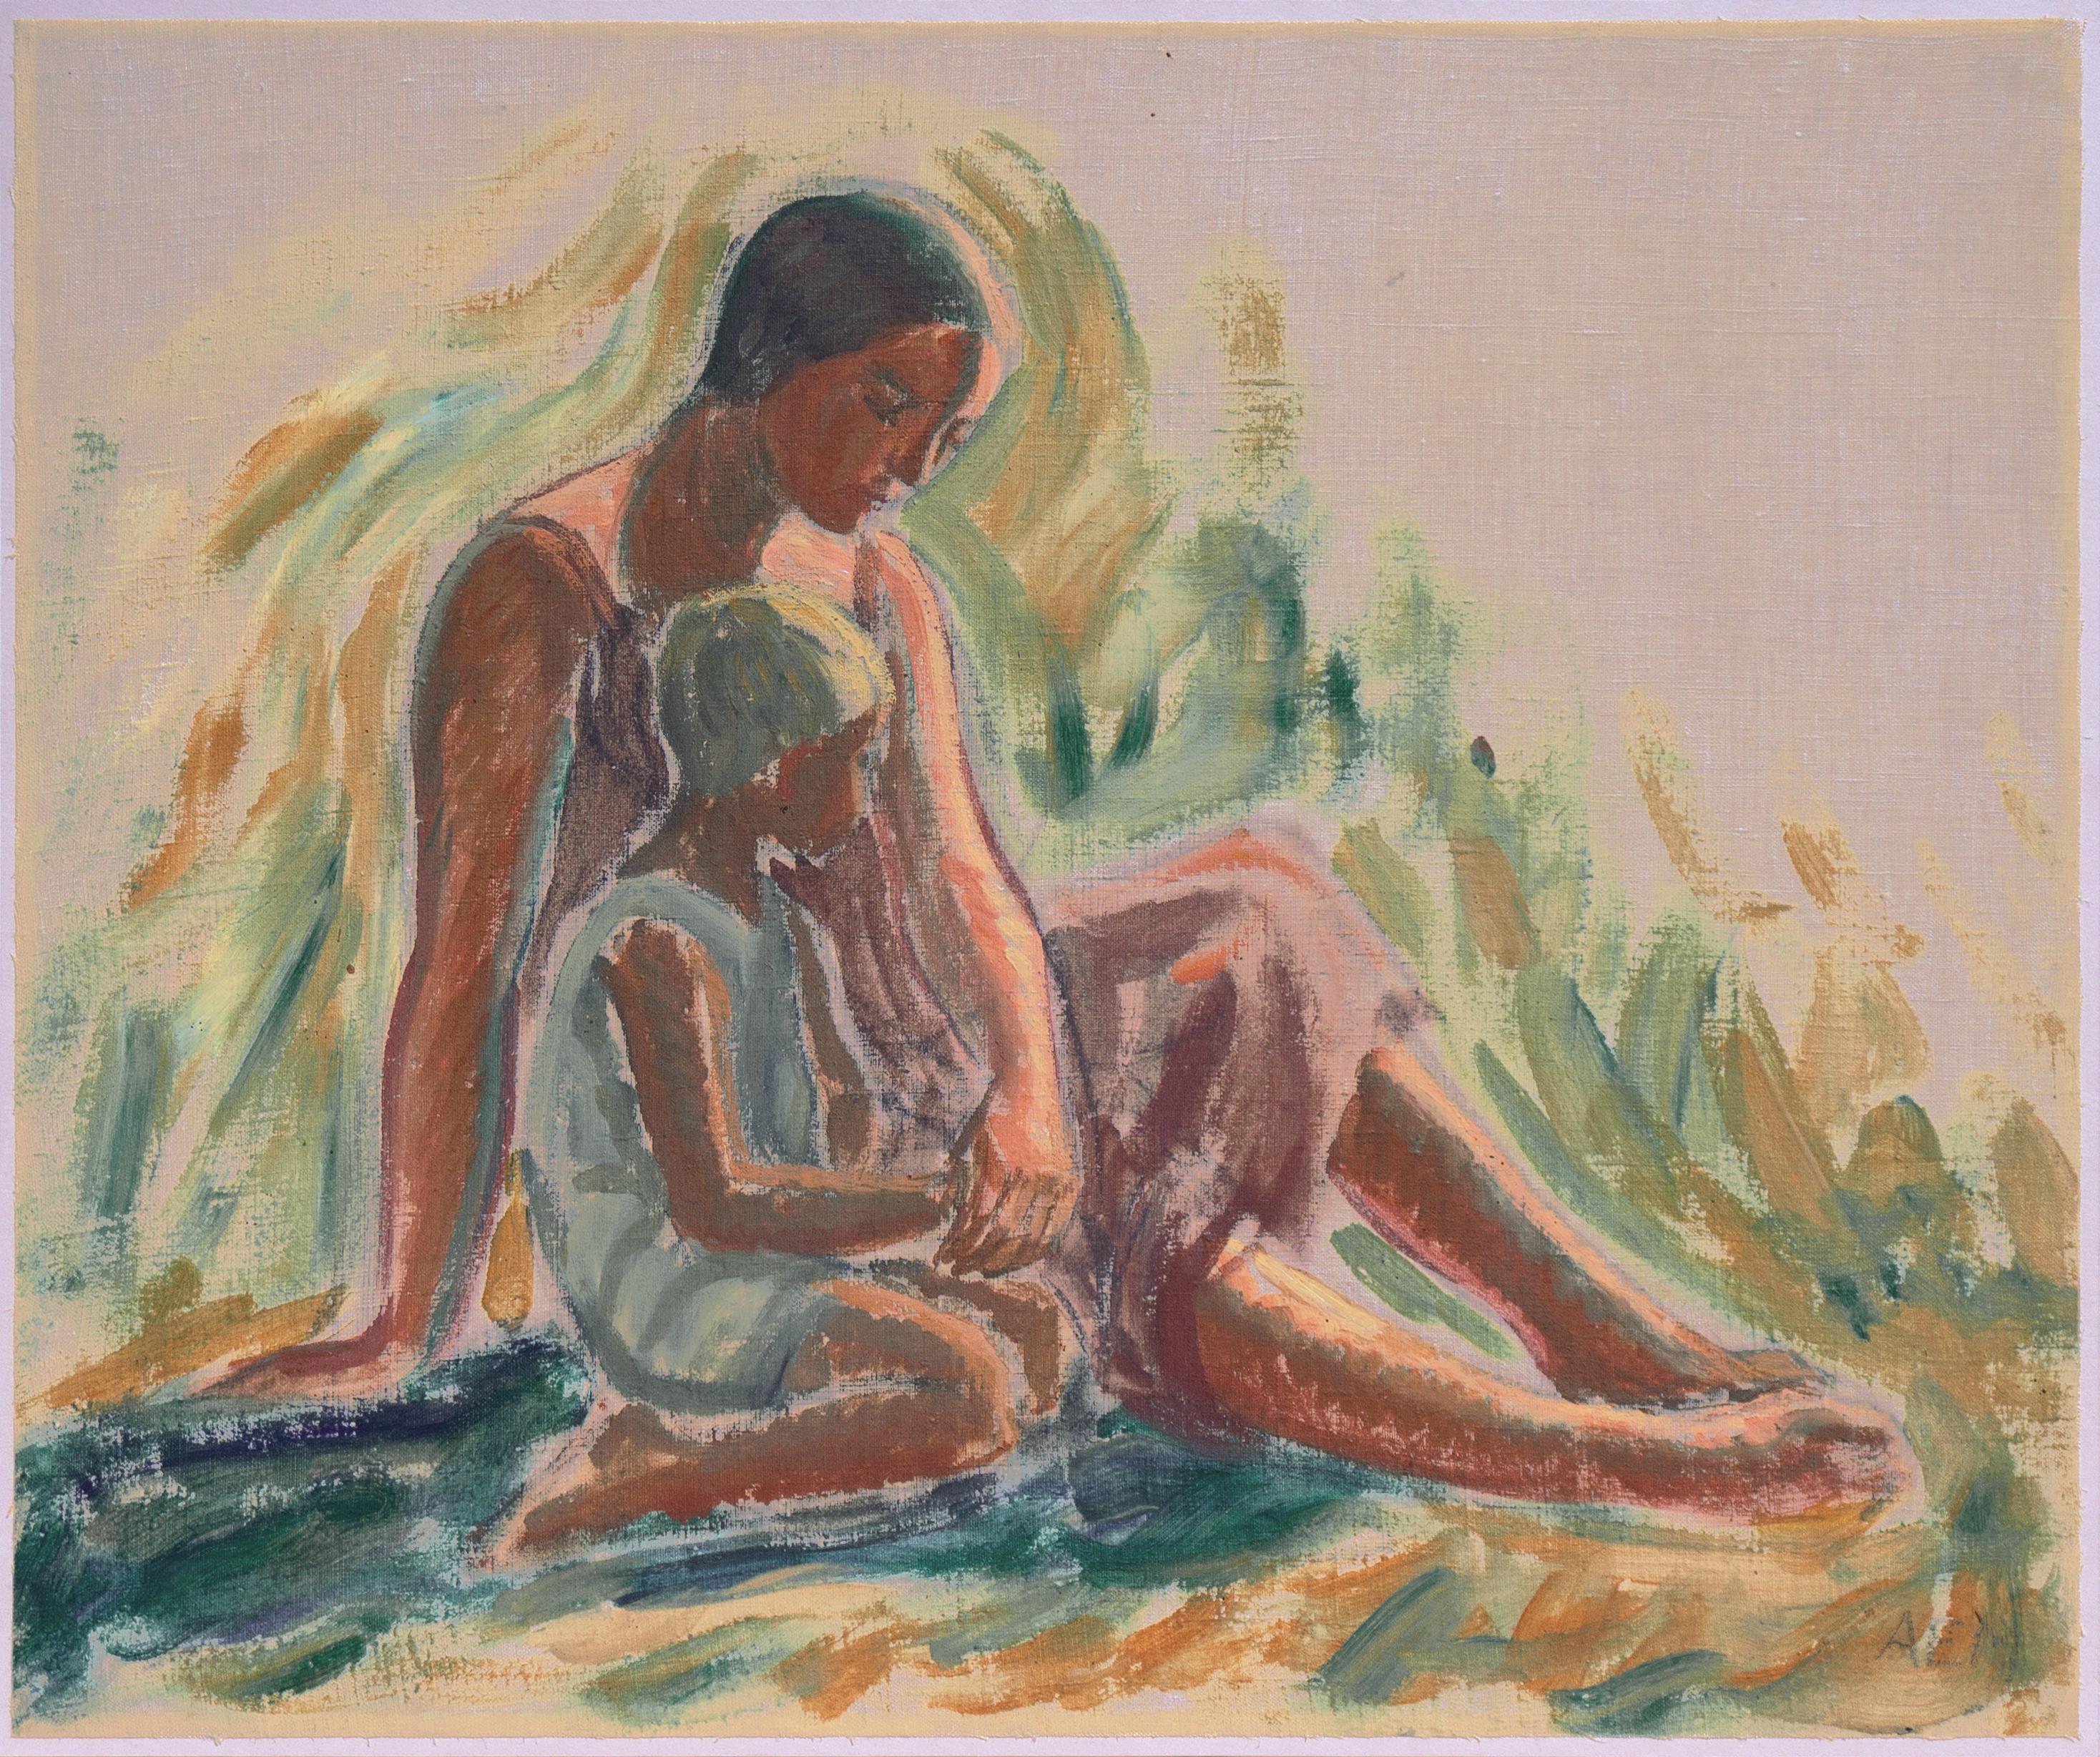 'Mother and Child', Woman Impressionist, Paris, Académie Julian, Benezit For Sale 5